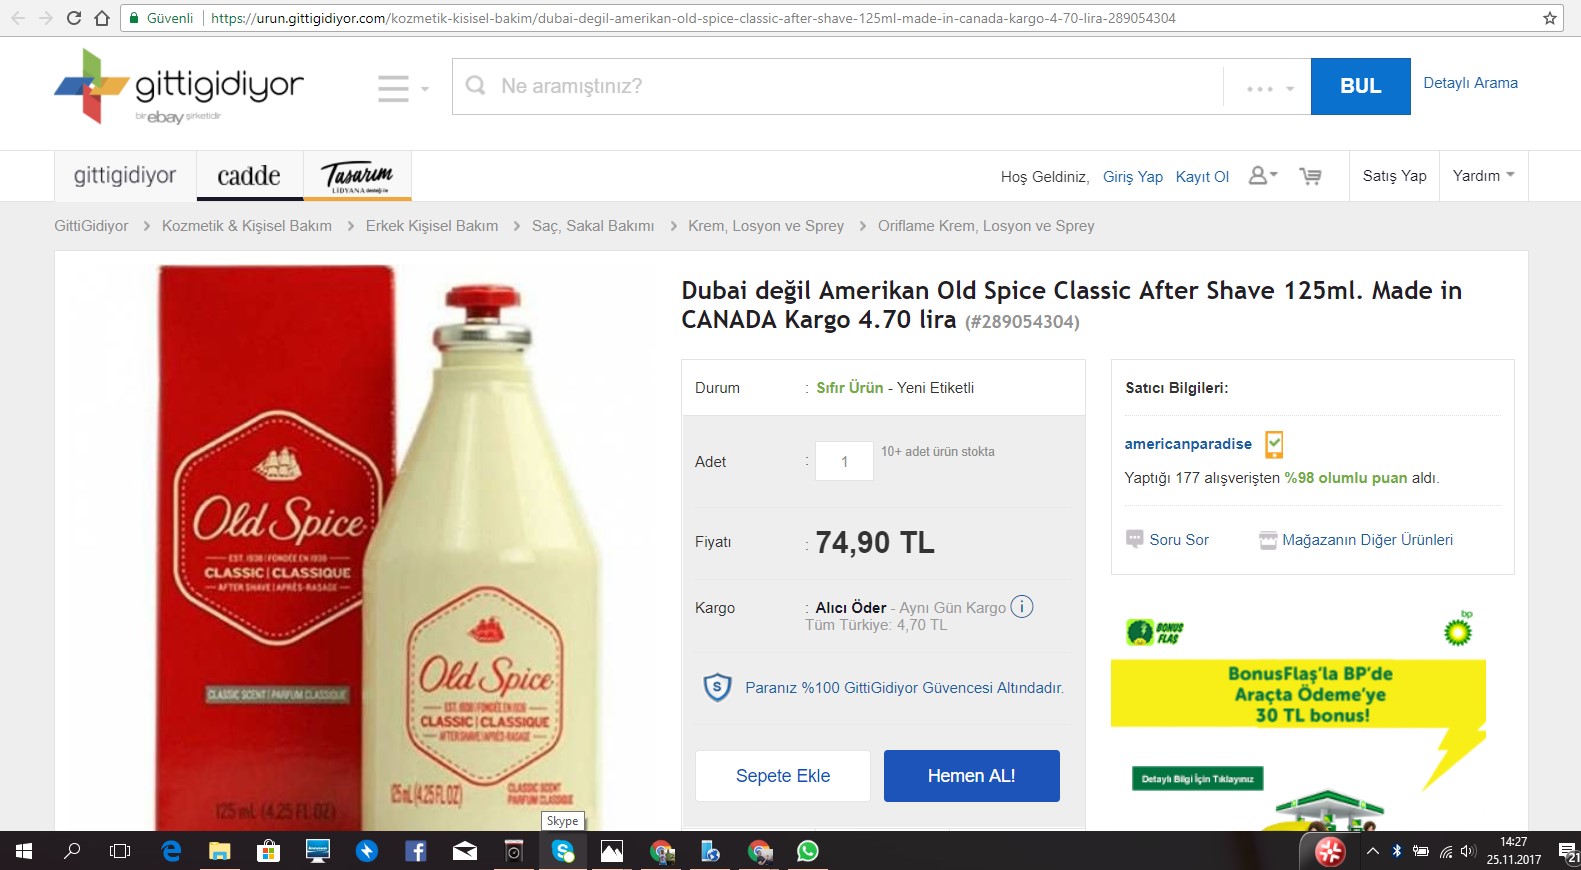 old spice aftershave dubai değil diyor kanada malı imiş sahte çakma parfüm dosyası.jpg